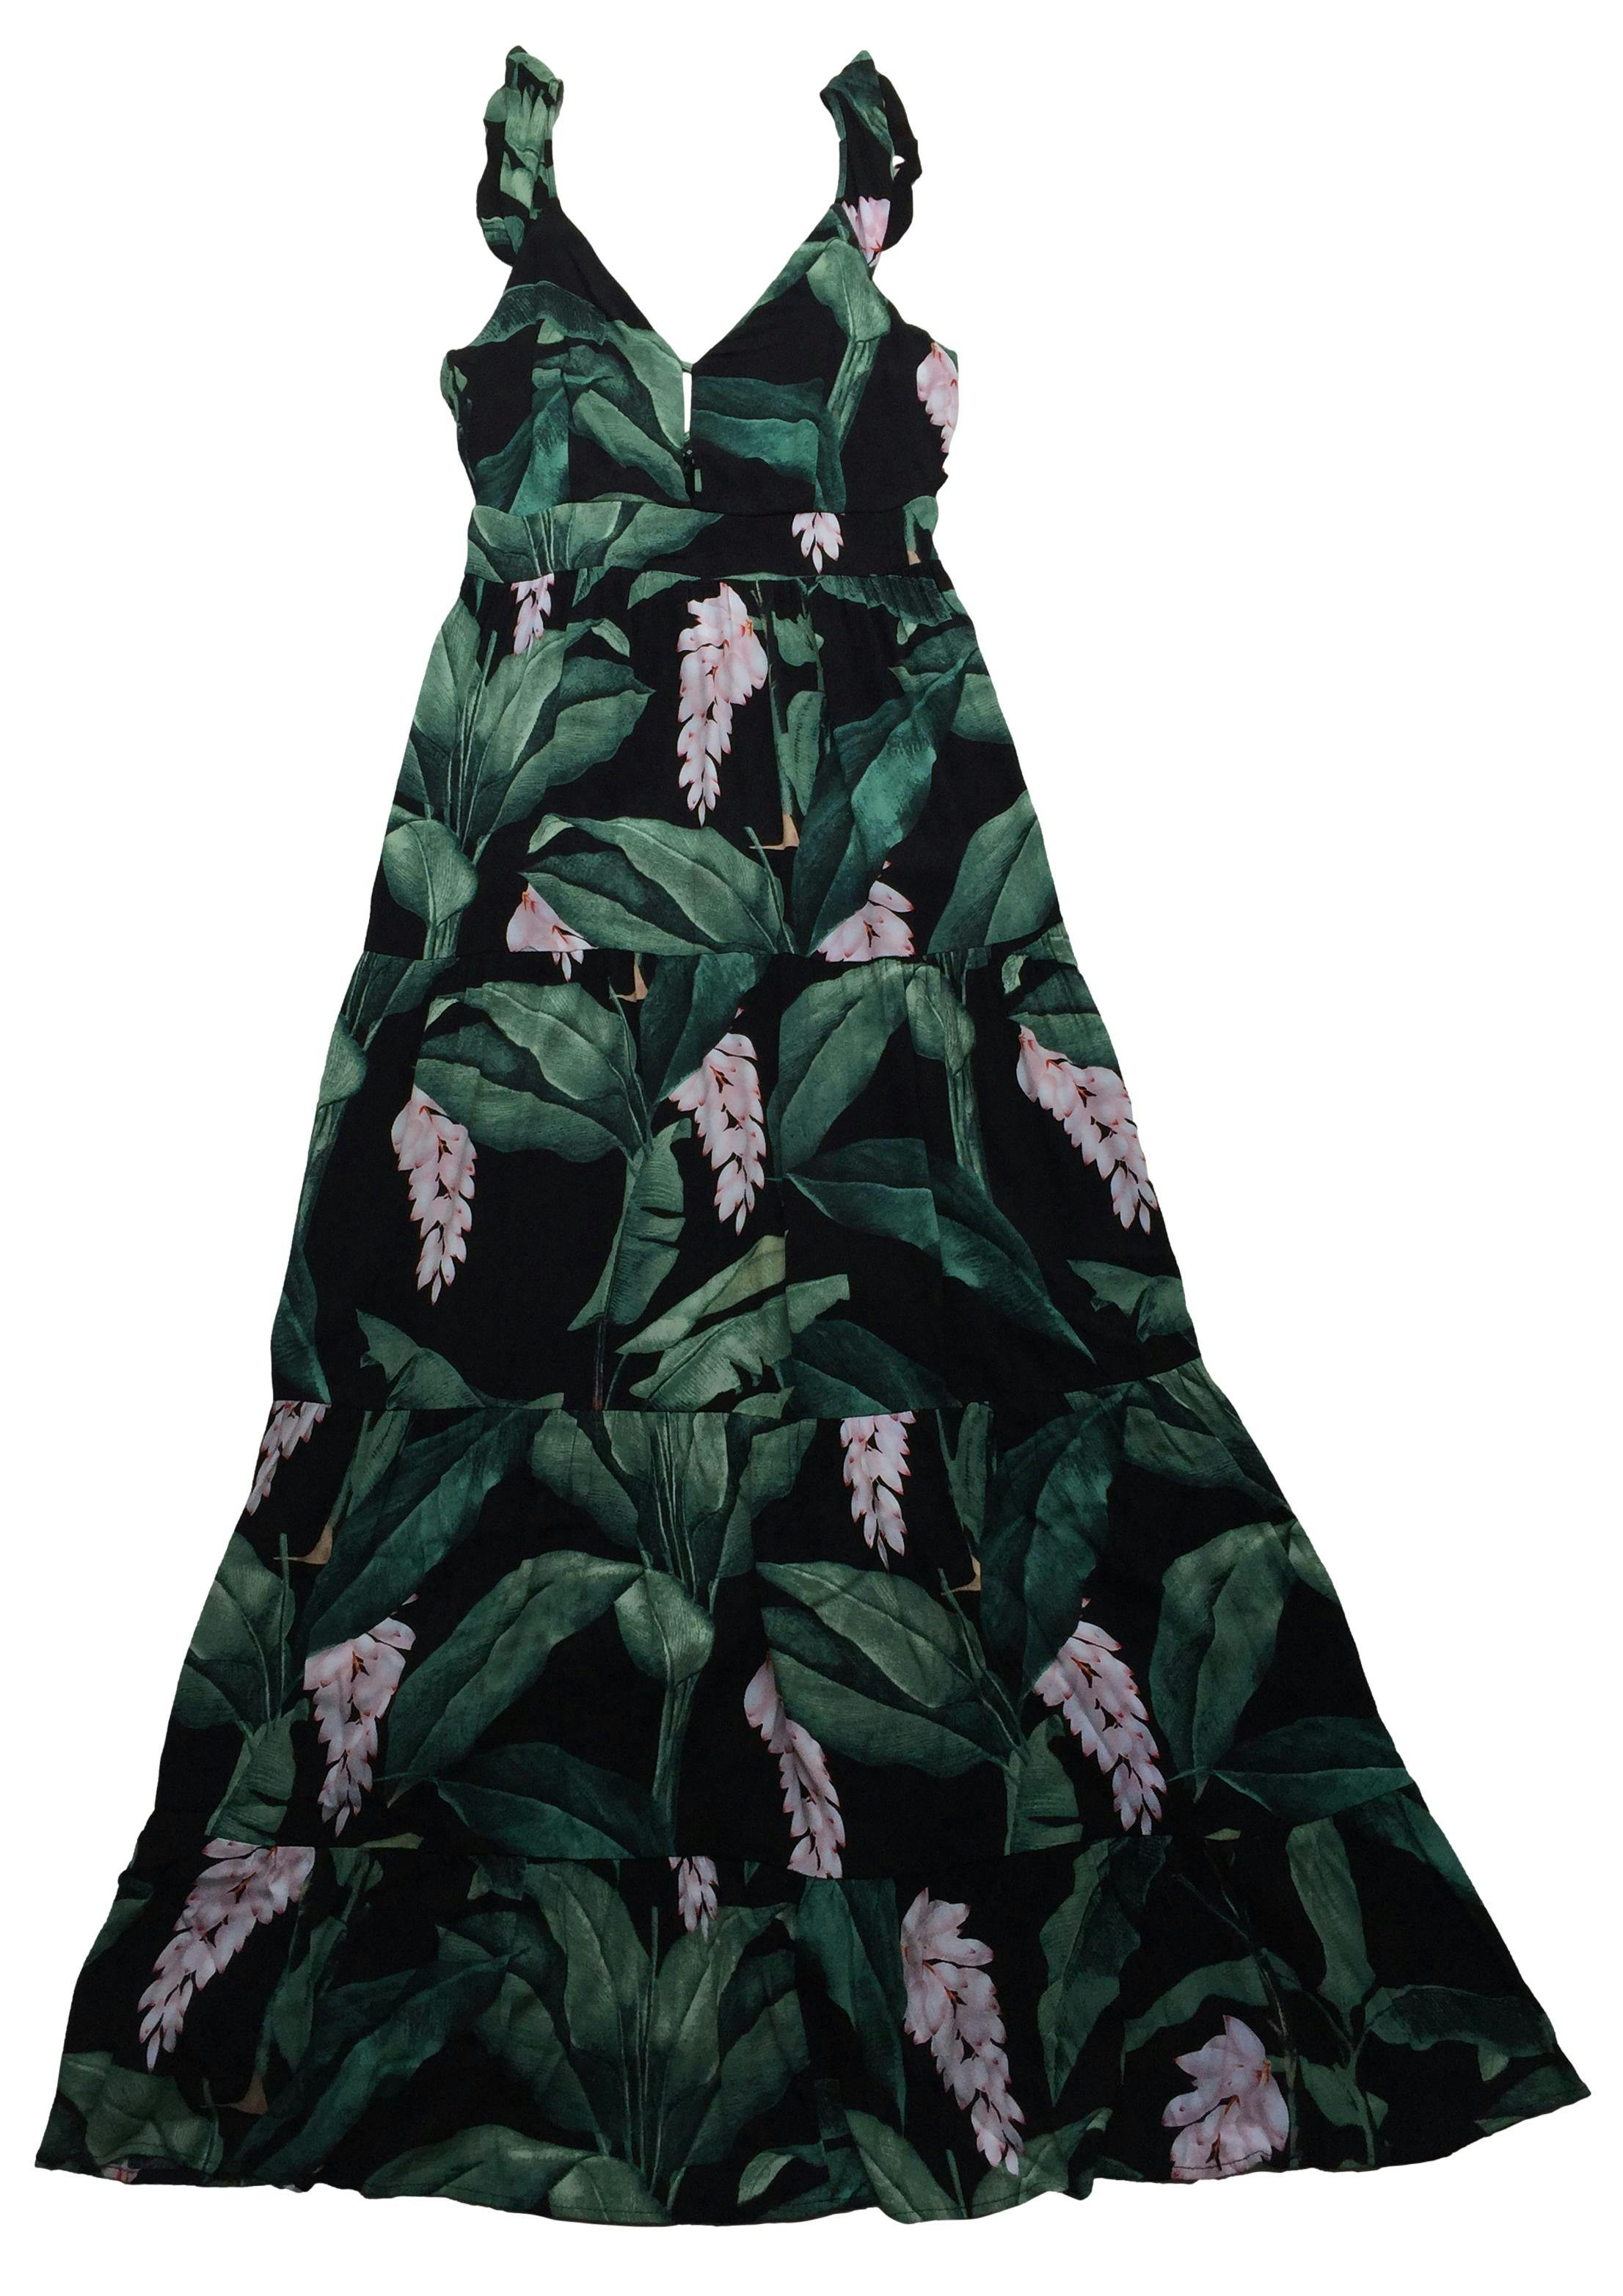 Vestido largo Marquis negro con hojas verdes y rosa, panal de abeja en espalda. Busto 90cm Largo 140cm